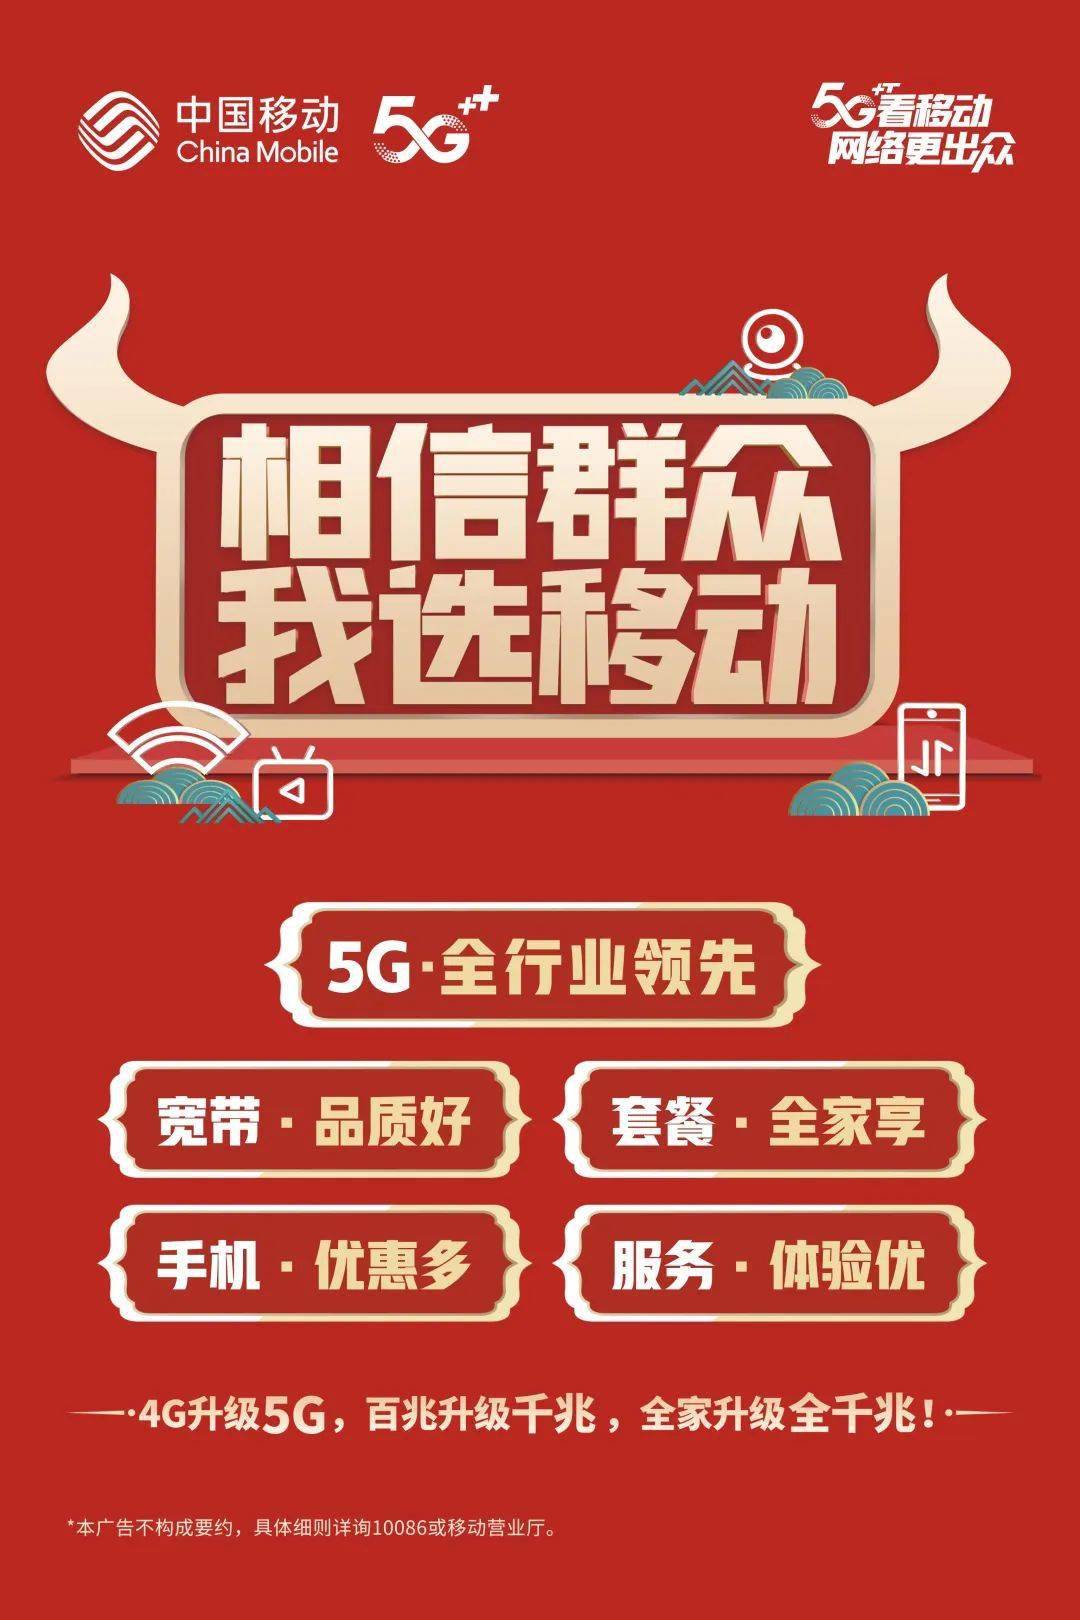 5G 手机优惠政策大揭秘，助您享受超值网络体验  第2张